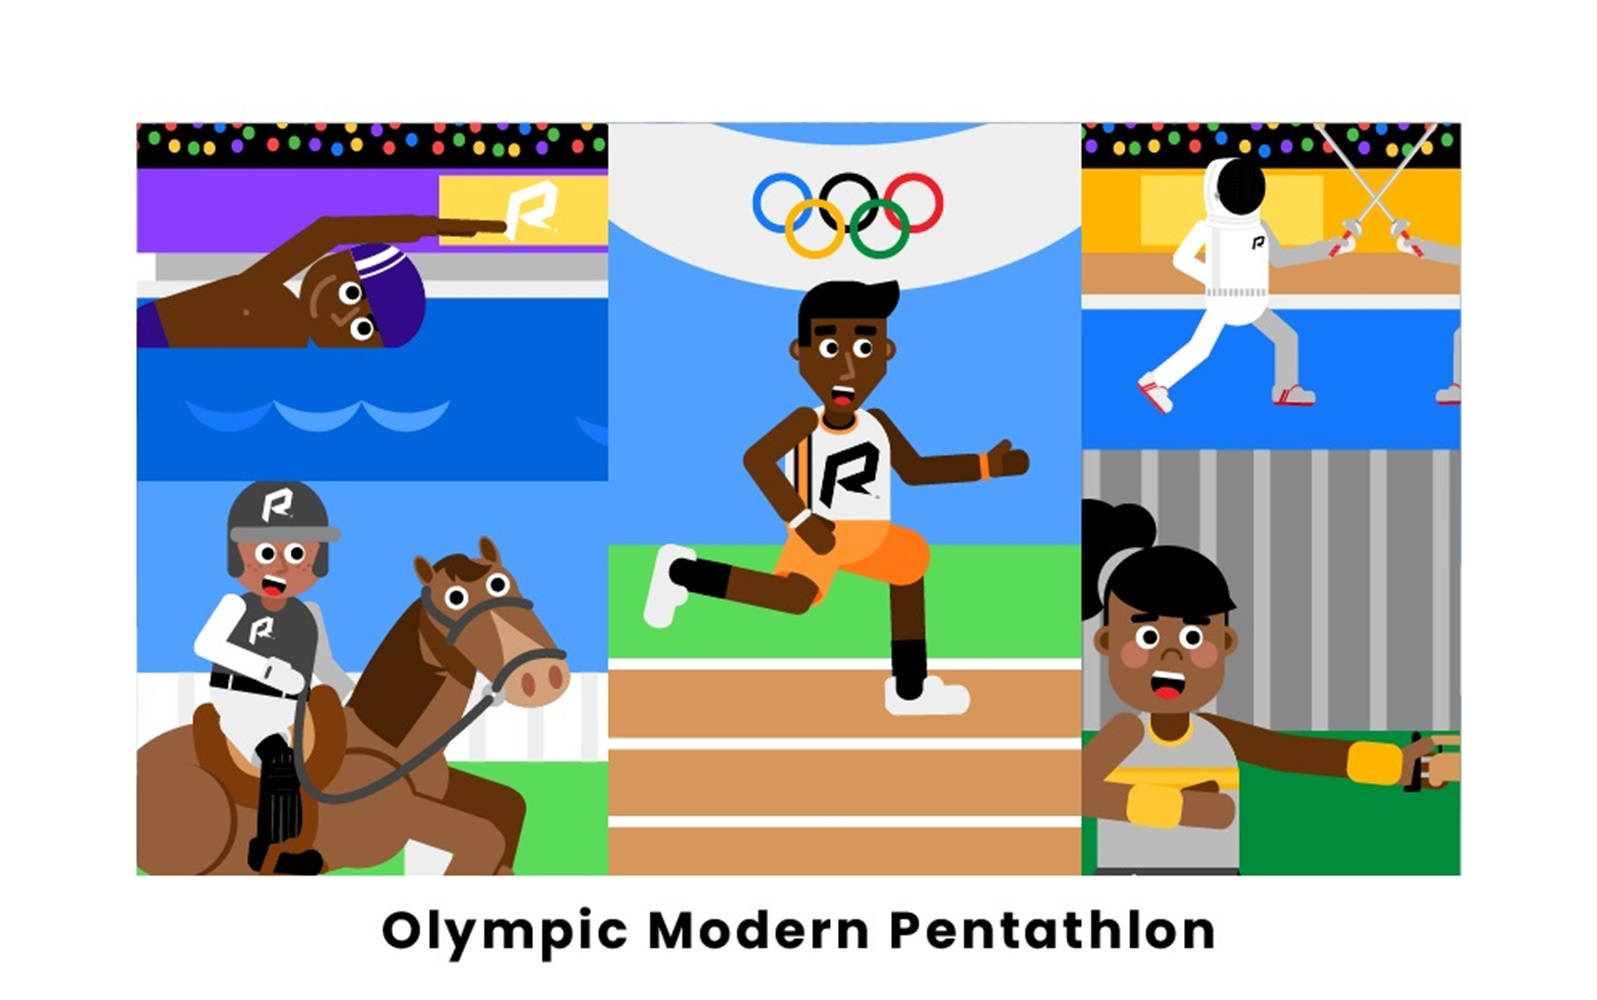 Arteen Forma De Caricatura De Pentatlón Moderno De Los Juegos Olímpicos. Fondo de pantalla